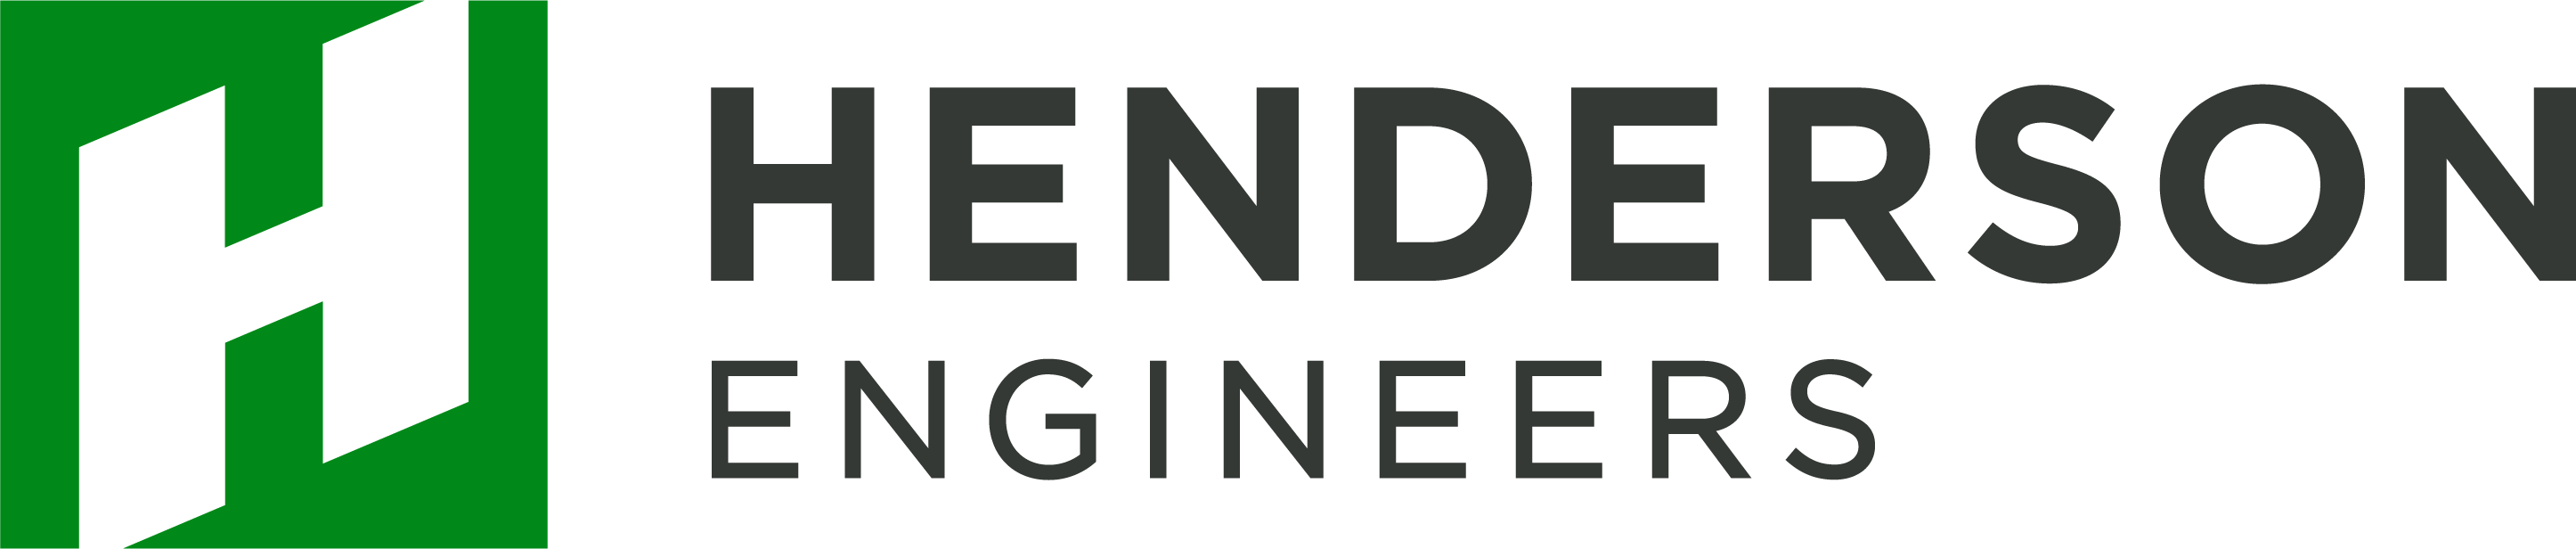 Henderson Engineers, Inc.